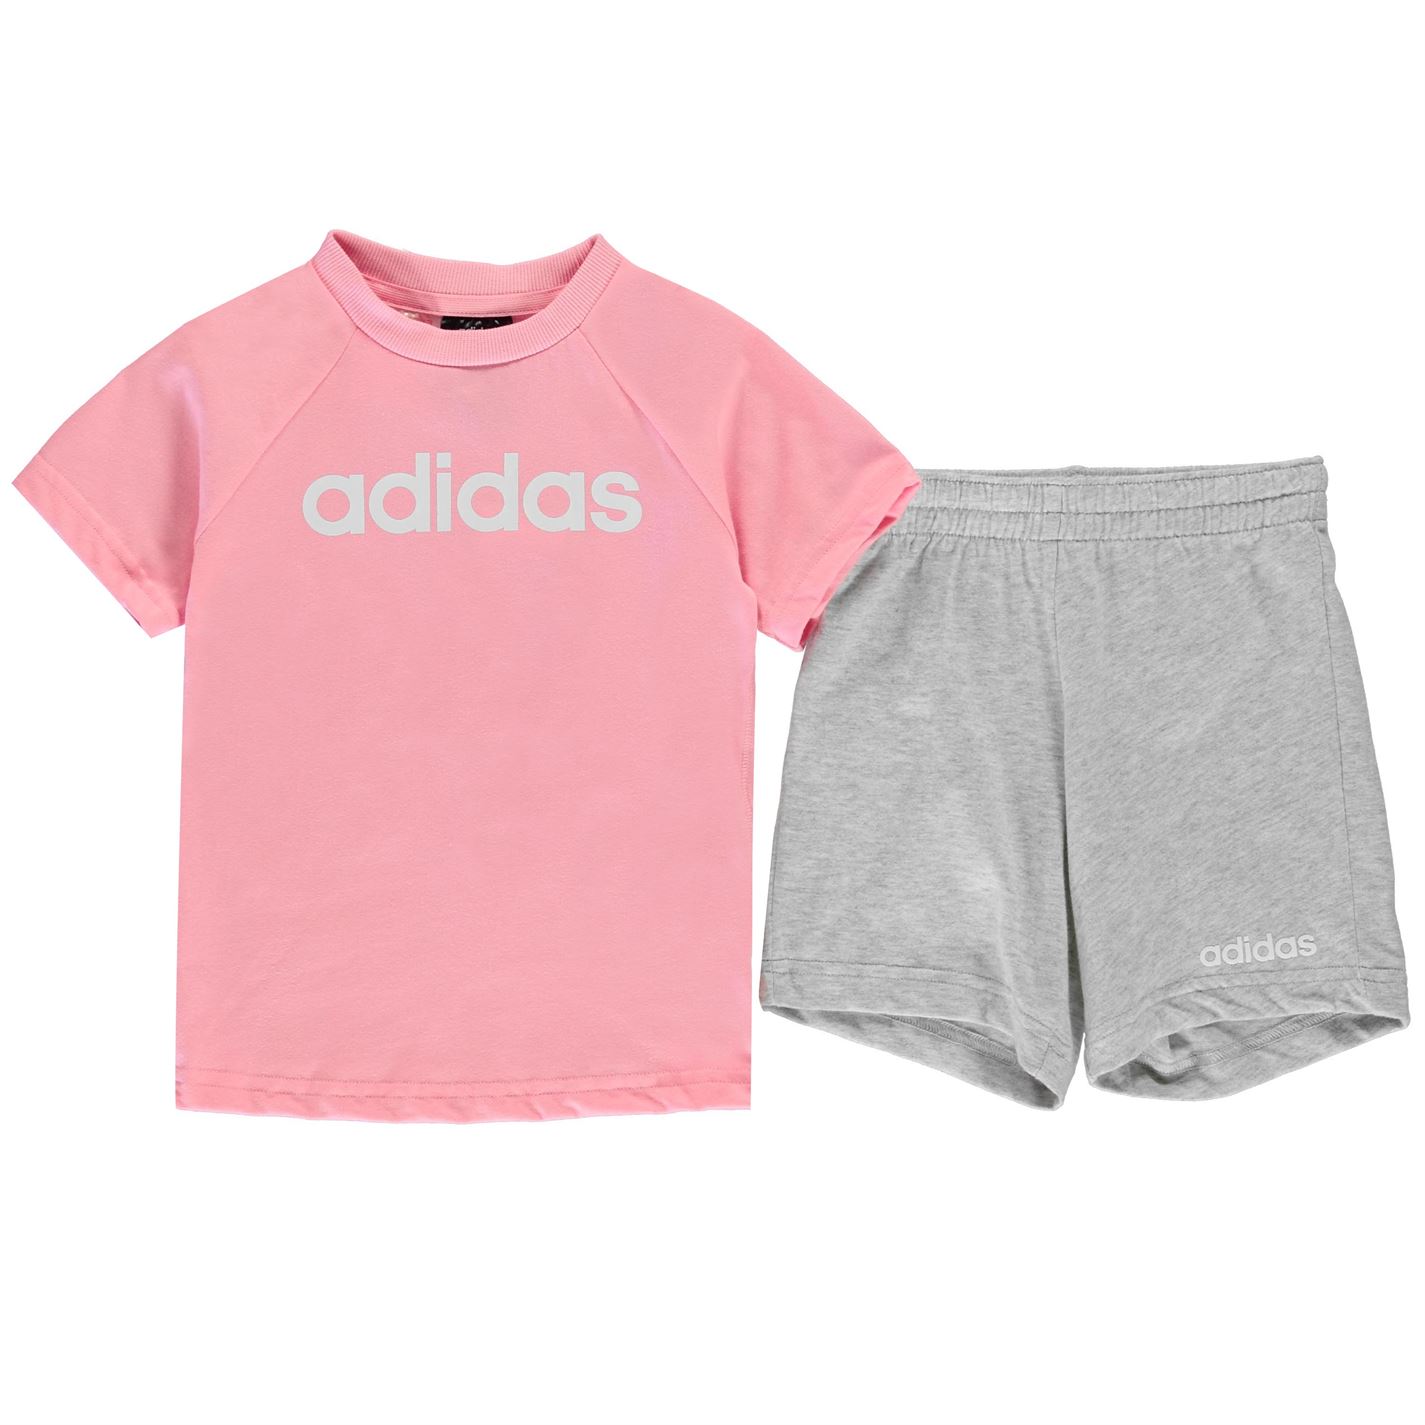 Adidas T Shirt and Shorts Set Infant Girls